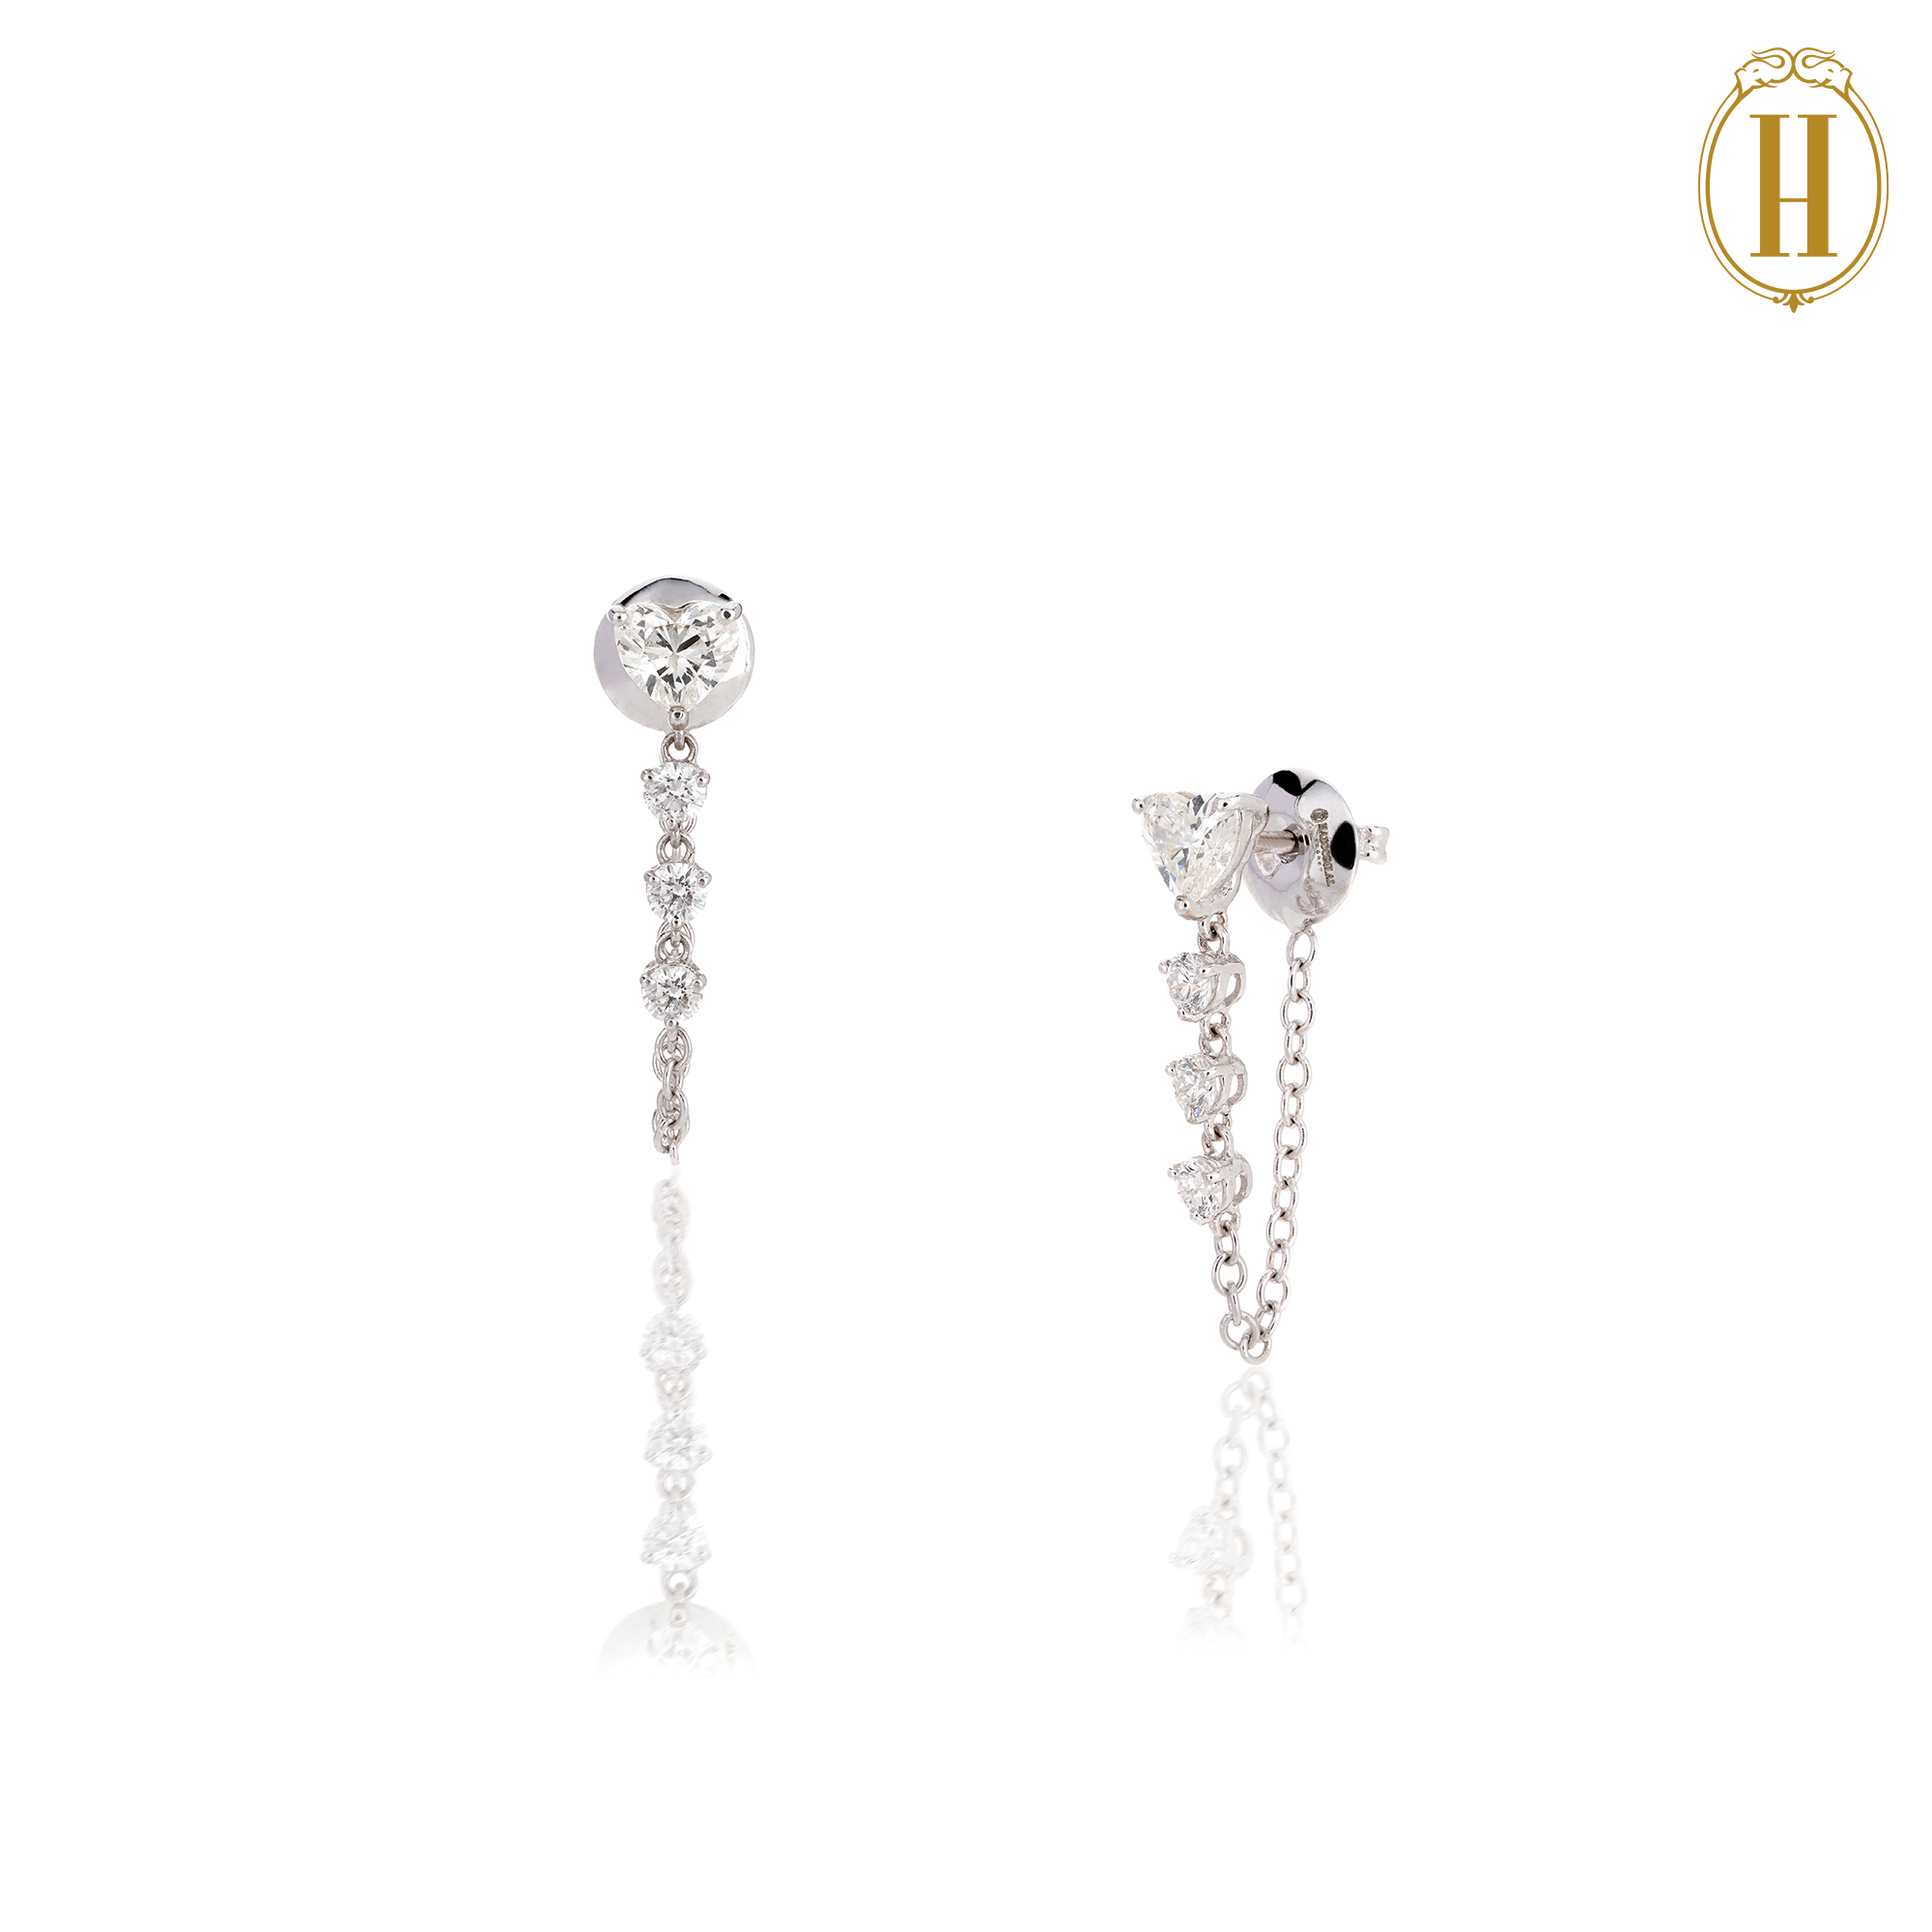 diamond earring set for women